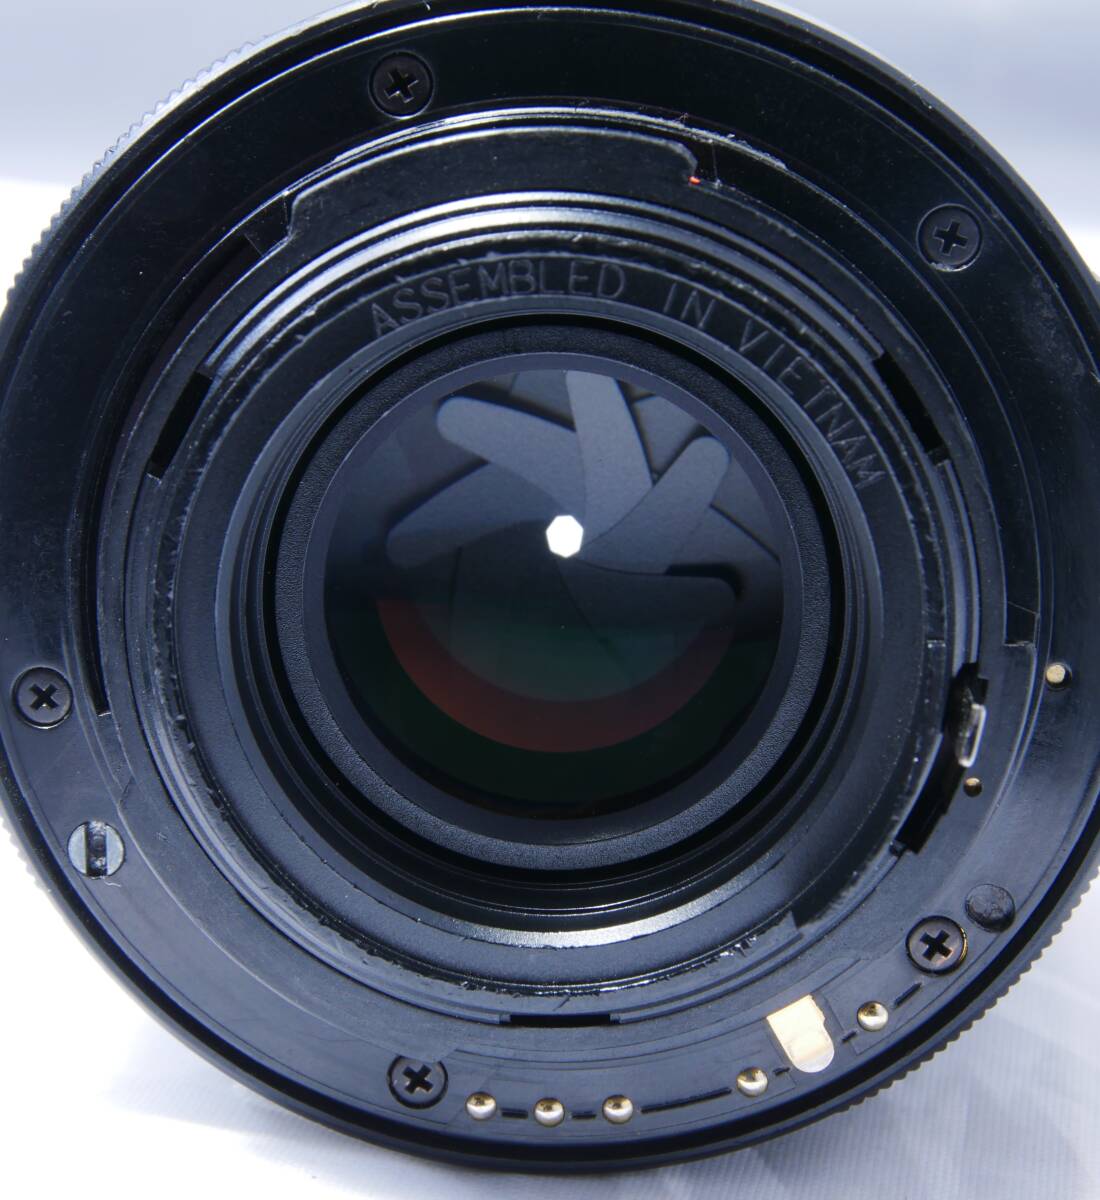 smc PENTAX-DA 50mmF1.8 中望遠単焦点レンズ _画像6